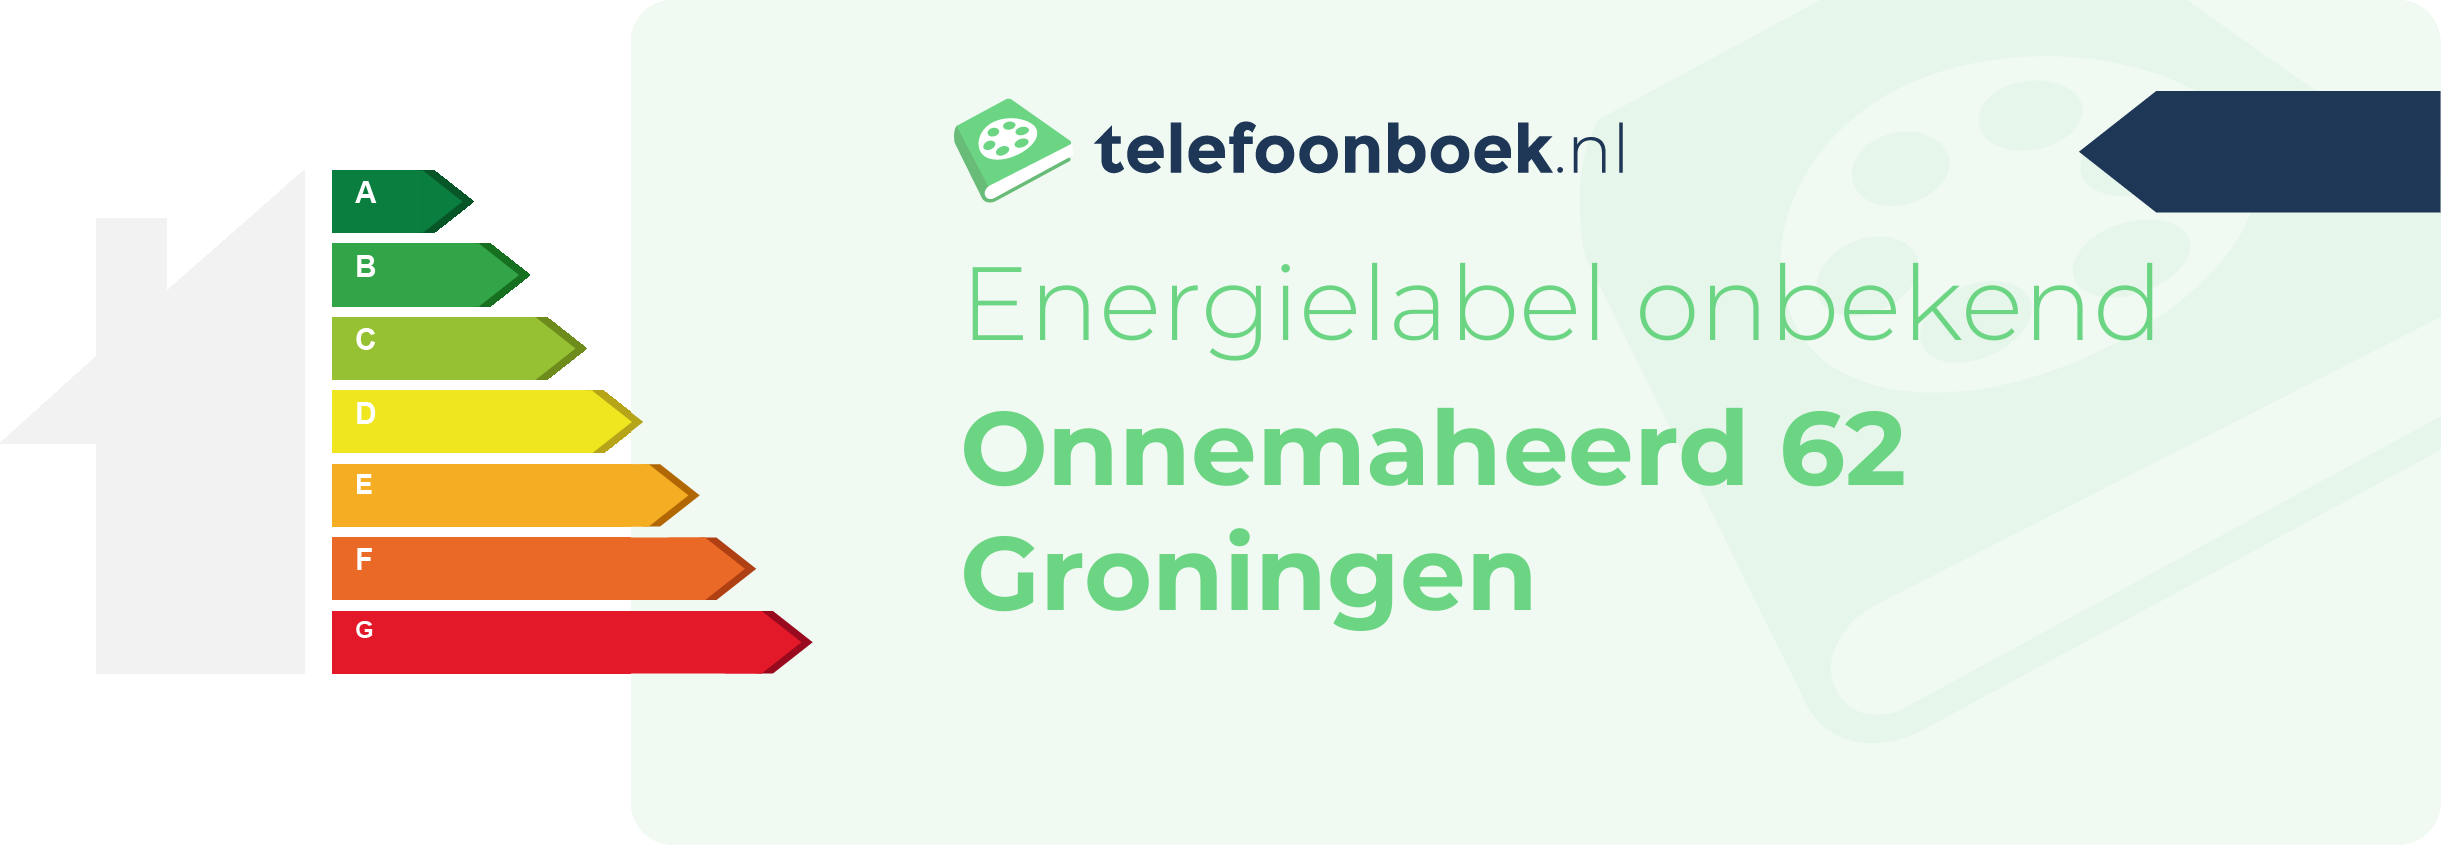 Energielabel Onnemaheerd 62 Groningen